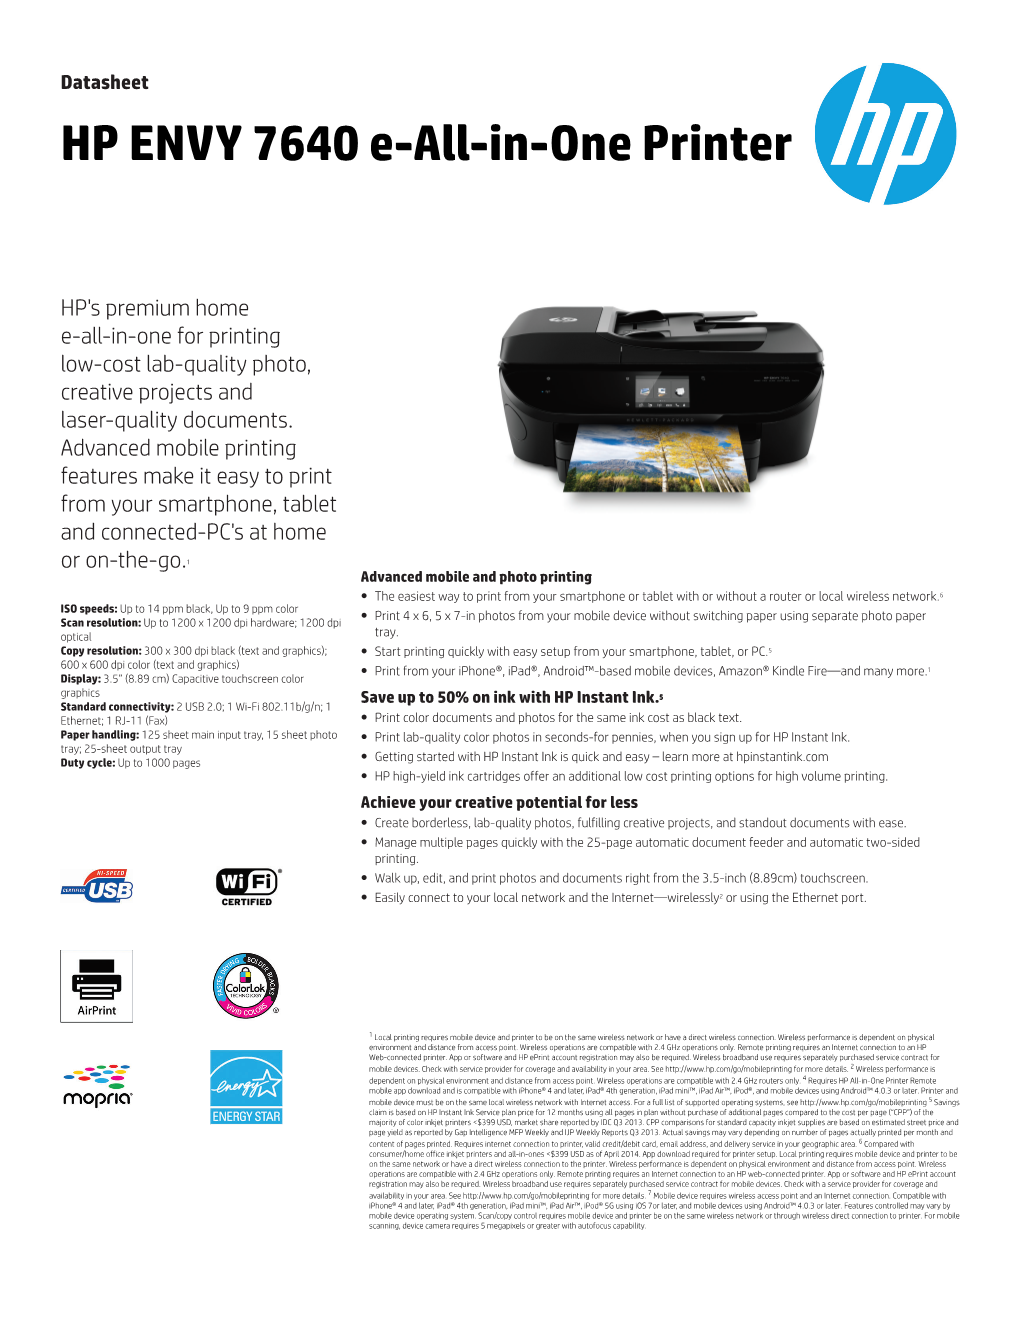 HP ENVY 7640 E-All-In-One Printer Datasheet